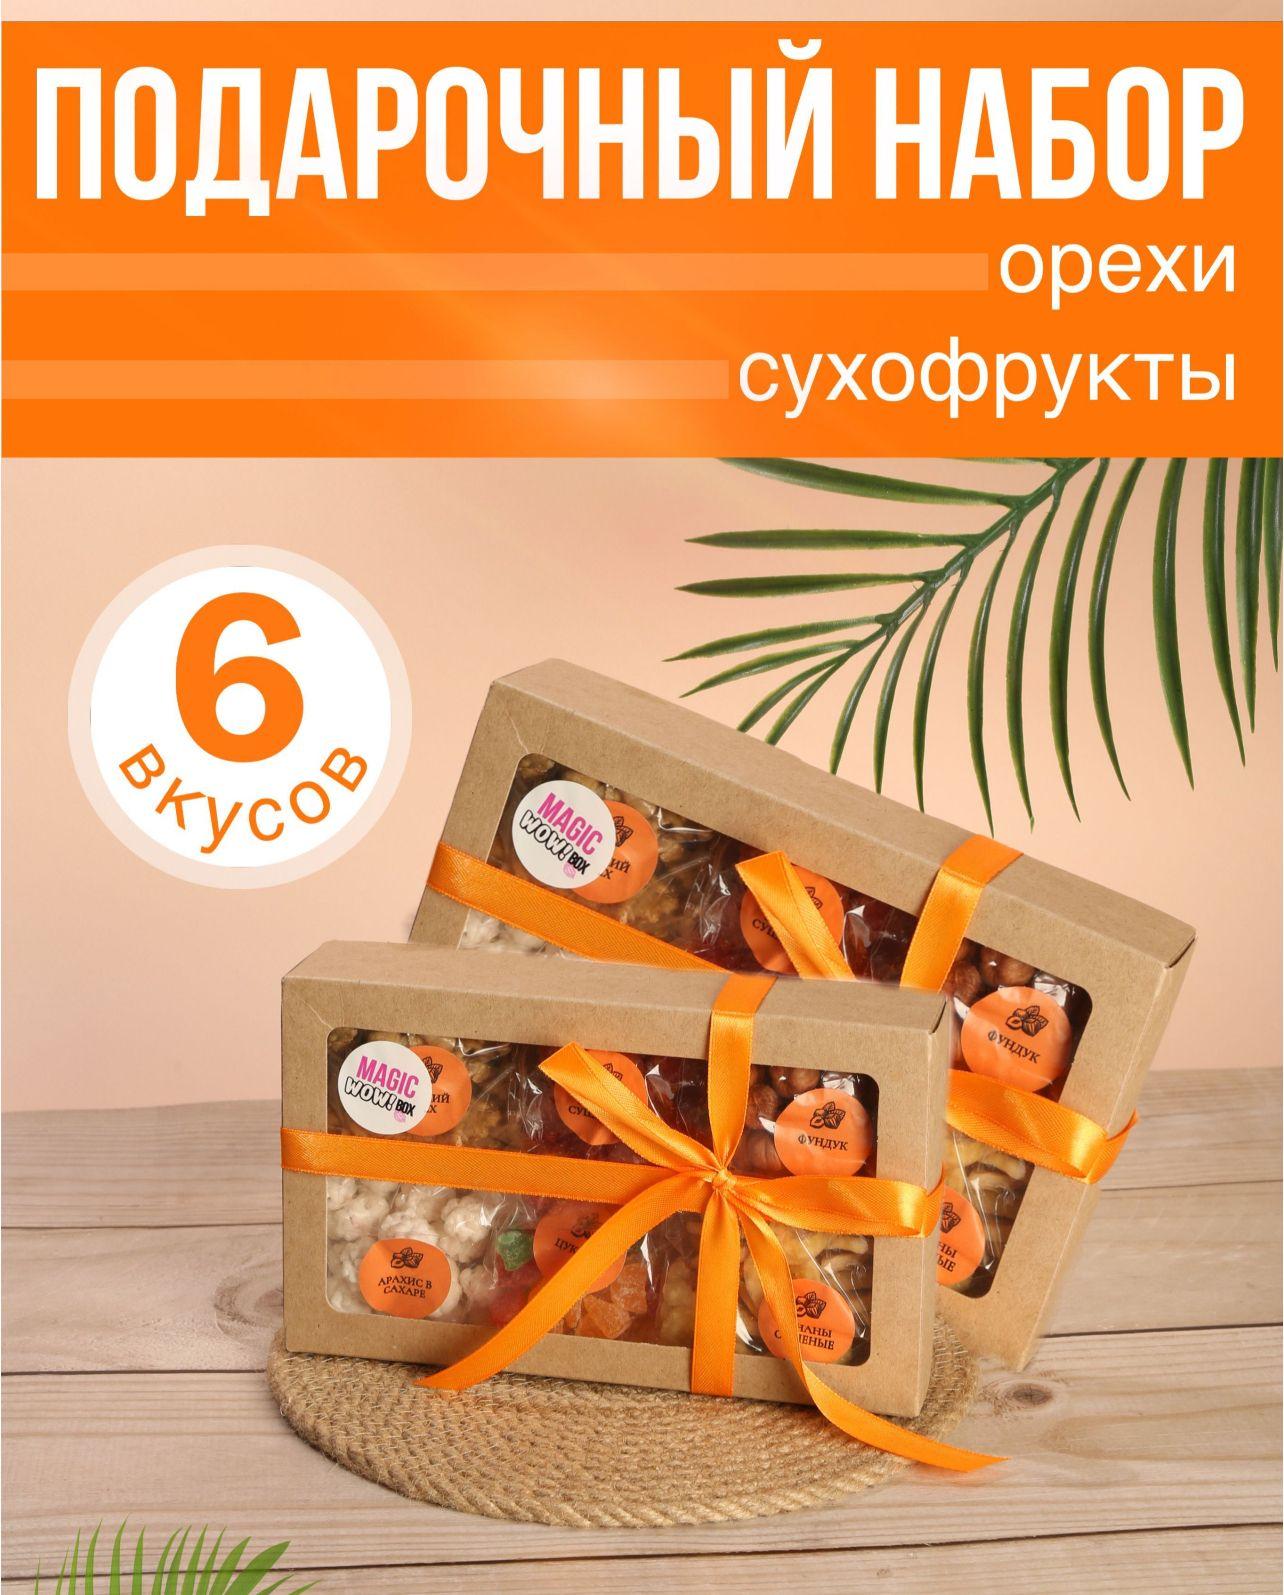 Подарочный набор для женщин орехов и сухофруктов / Подарок на 8 марта женщине, маме, подруге, сестре, девочке, жене